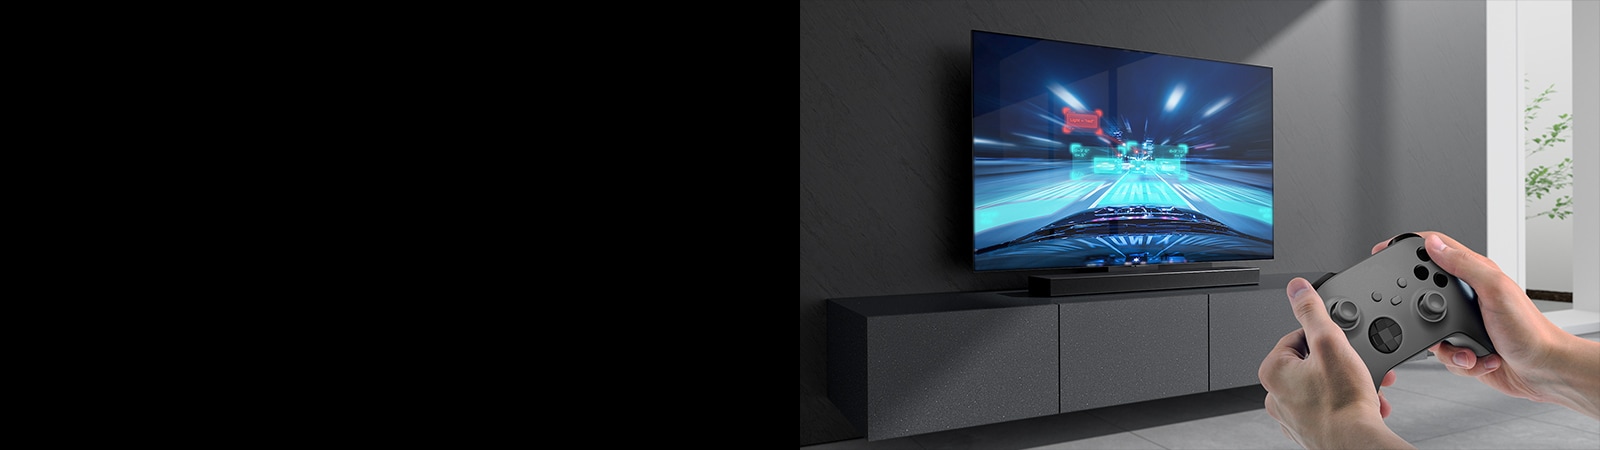 Horizontalusis garsiakalbis („sound bar“) padėtas ant spintelės, o prie horizontaliojo garsiakalbio prijungtame televizoriuje matyti lenktynių žaidimo scena. Dešiniajame paveikslėlio apačios kampe yra žaidimų pultas, kurį laiko dvi rankos.